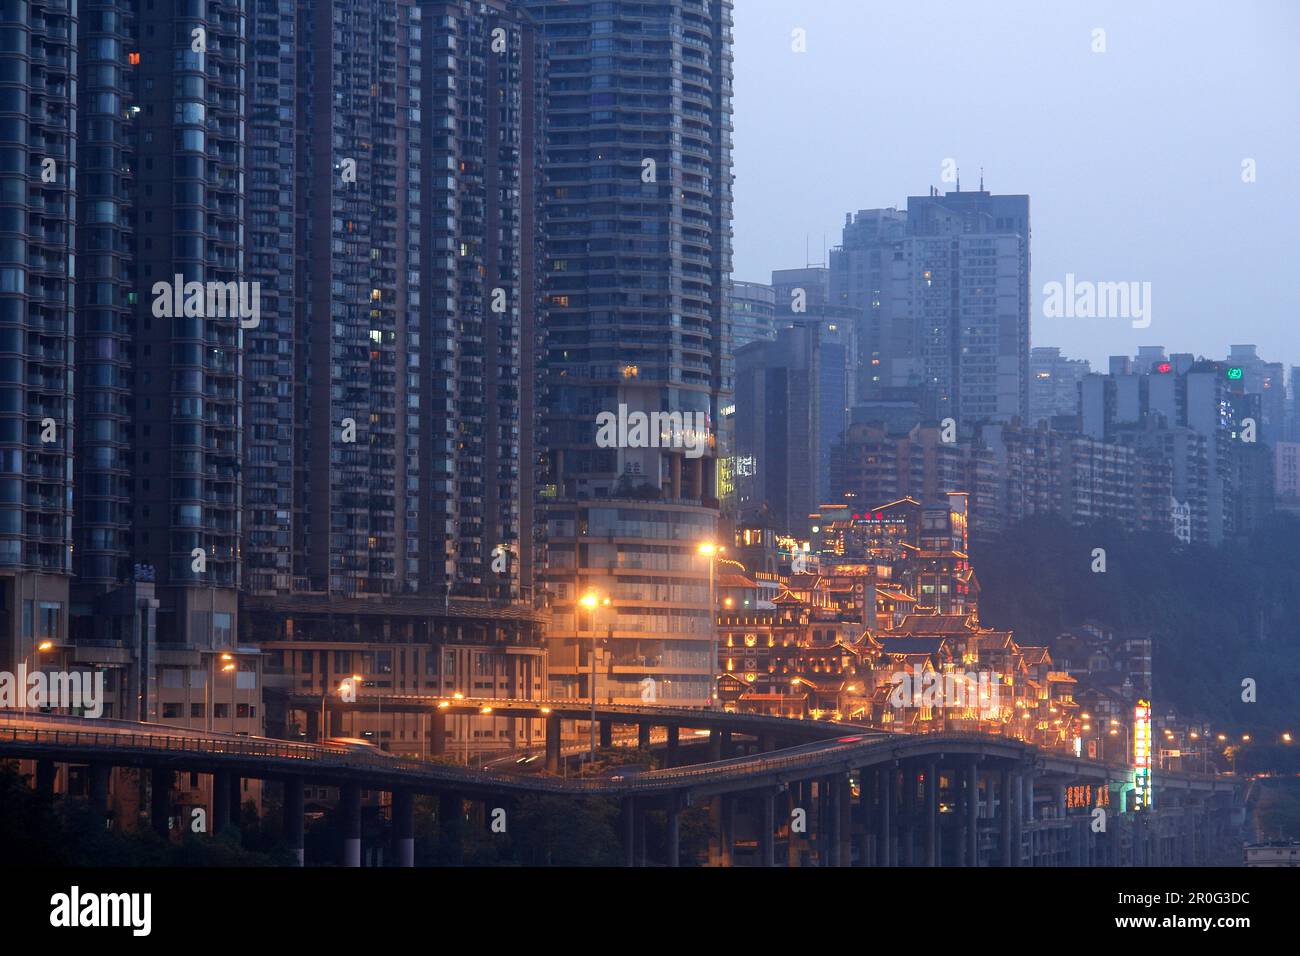 Dunkle, futuristisch aussehende Wolkenkratzer und die hoch beleuchtete Hongyadong Folklor Mall, Chongqing, China, Asien Stockfoto